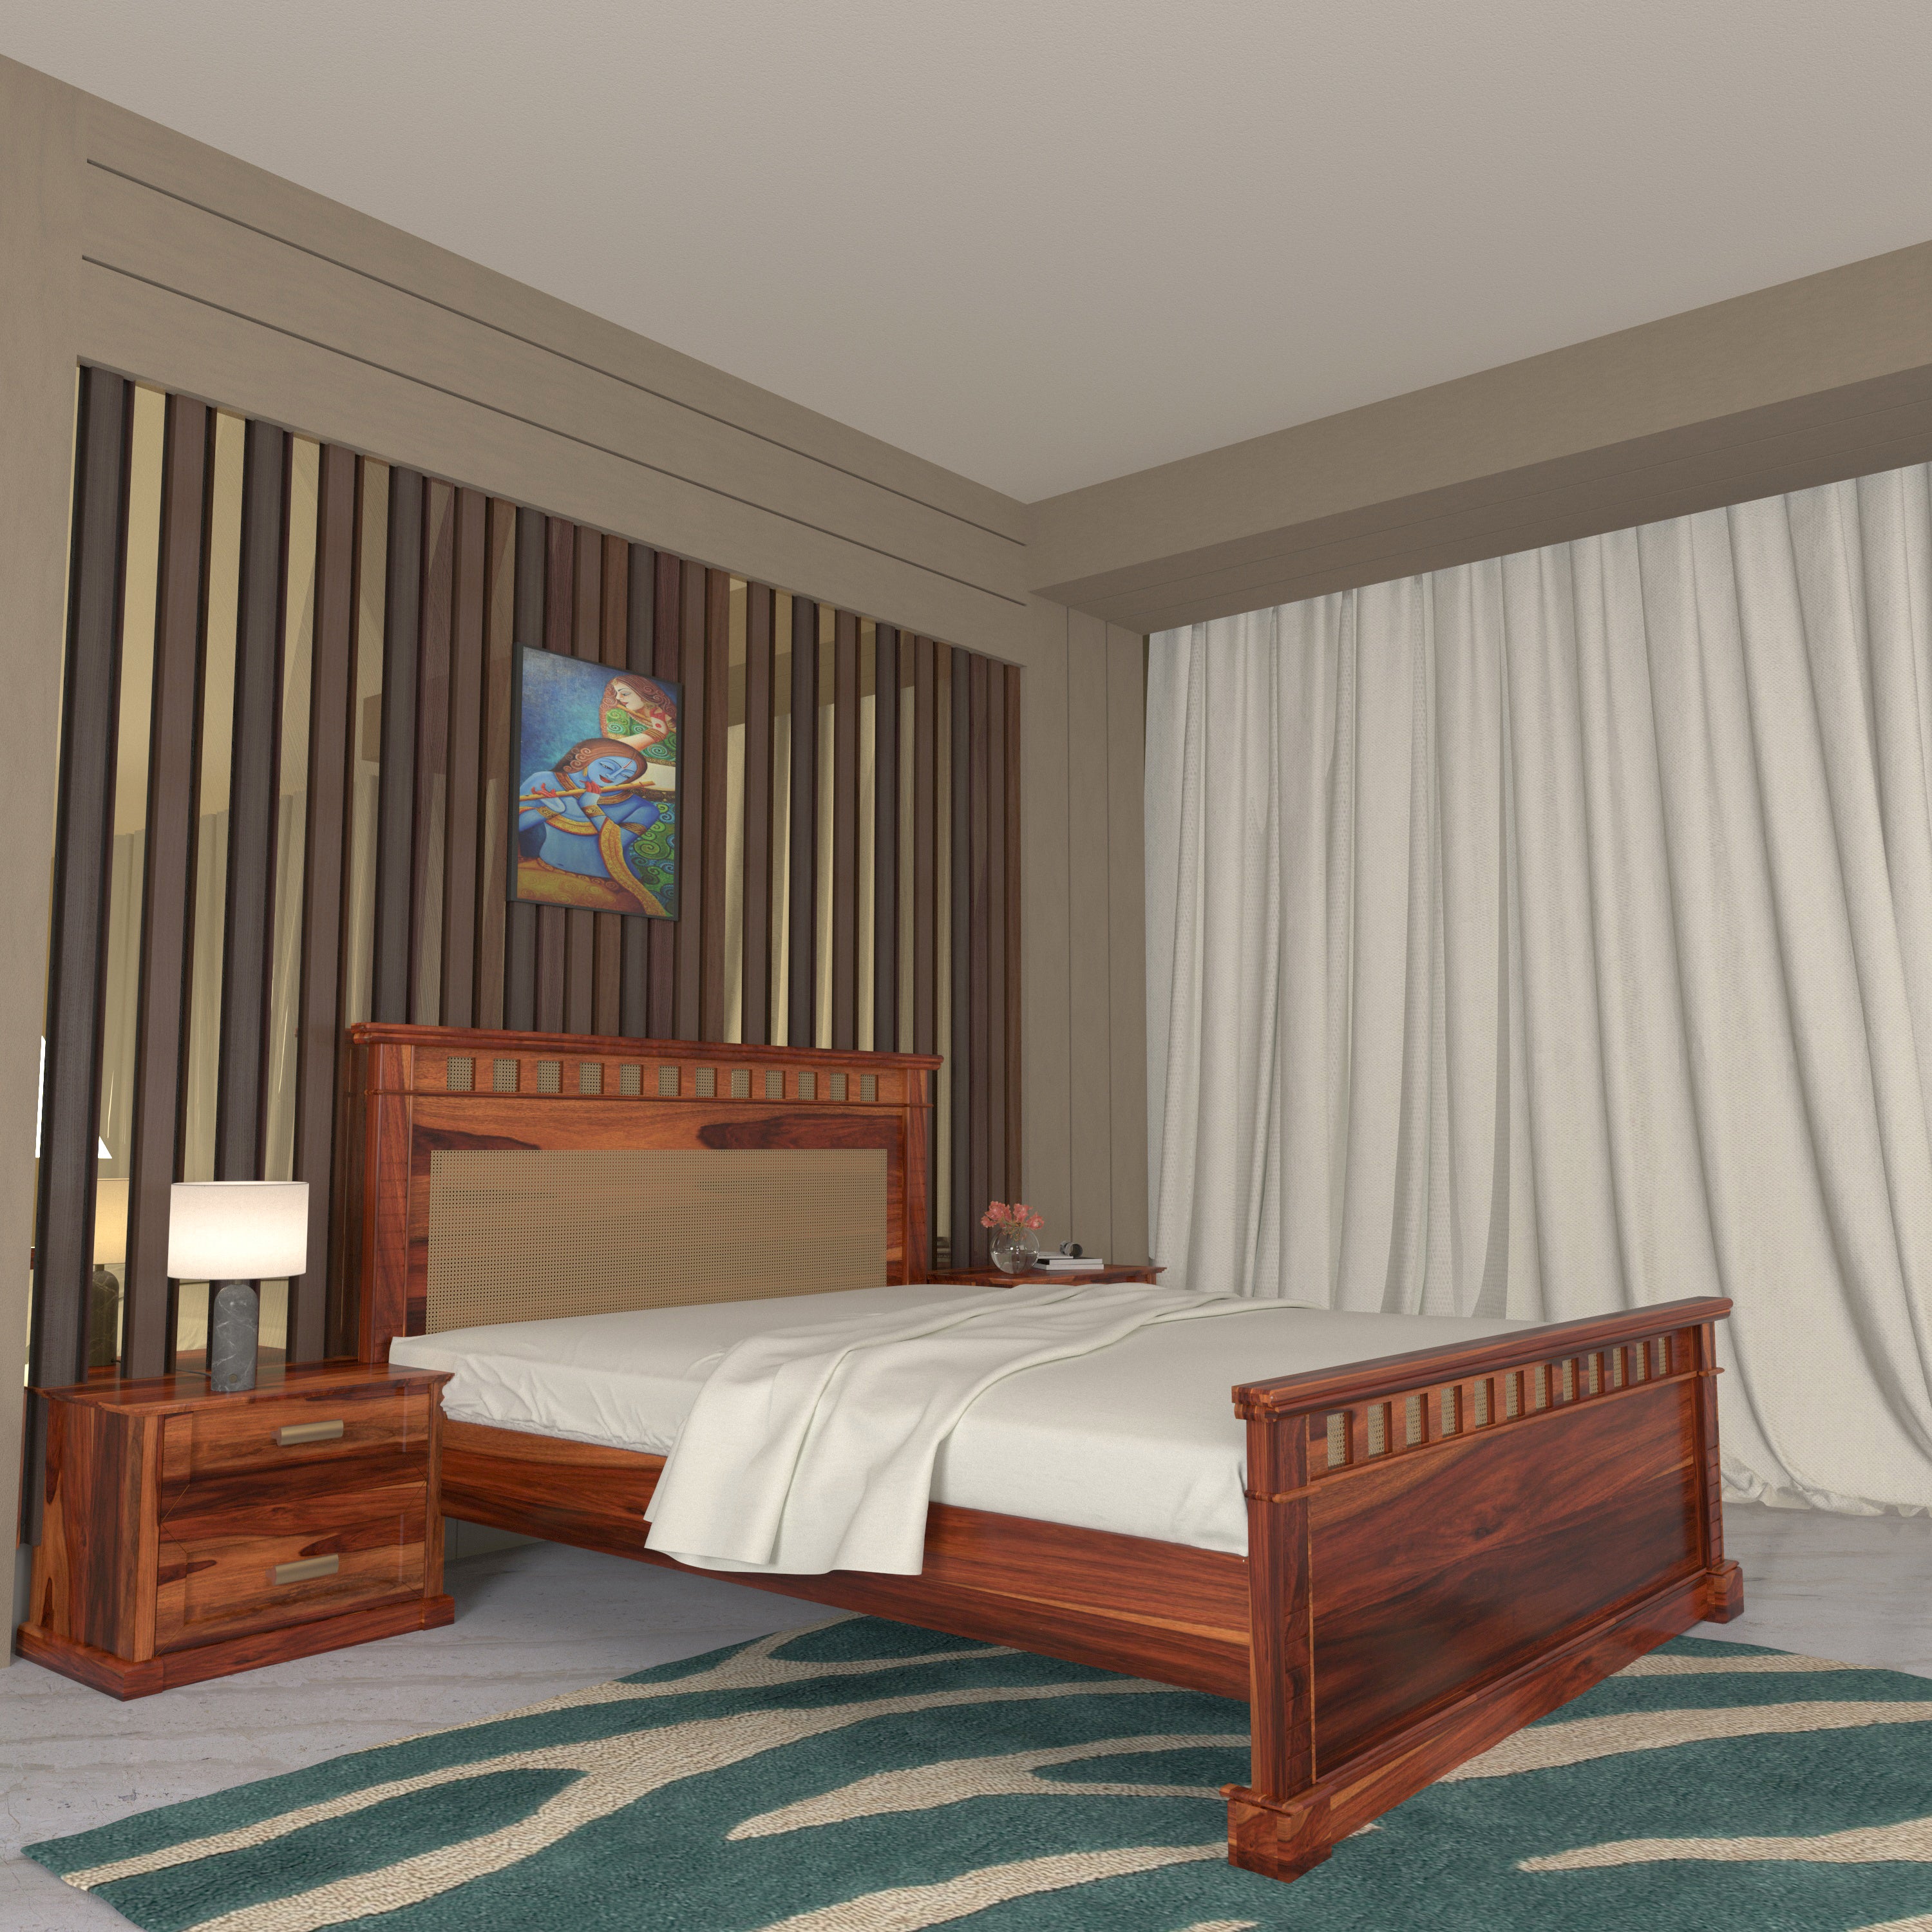 Vintage Denver Style Wooden Handmade Bed with Storage Bedside Bedroom Furniture Sets